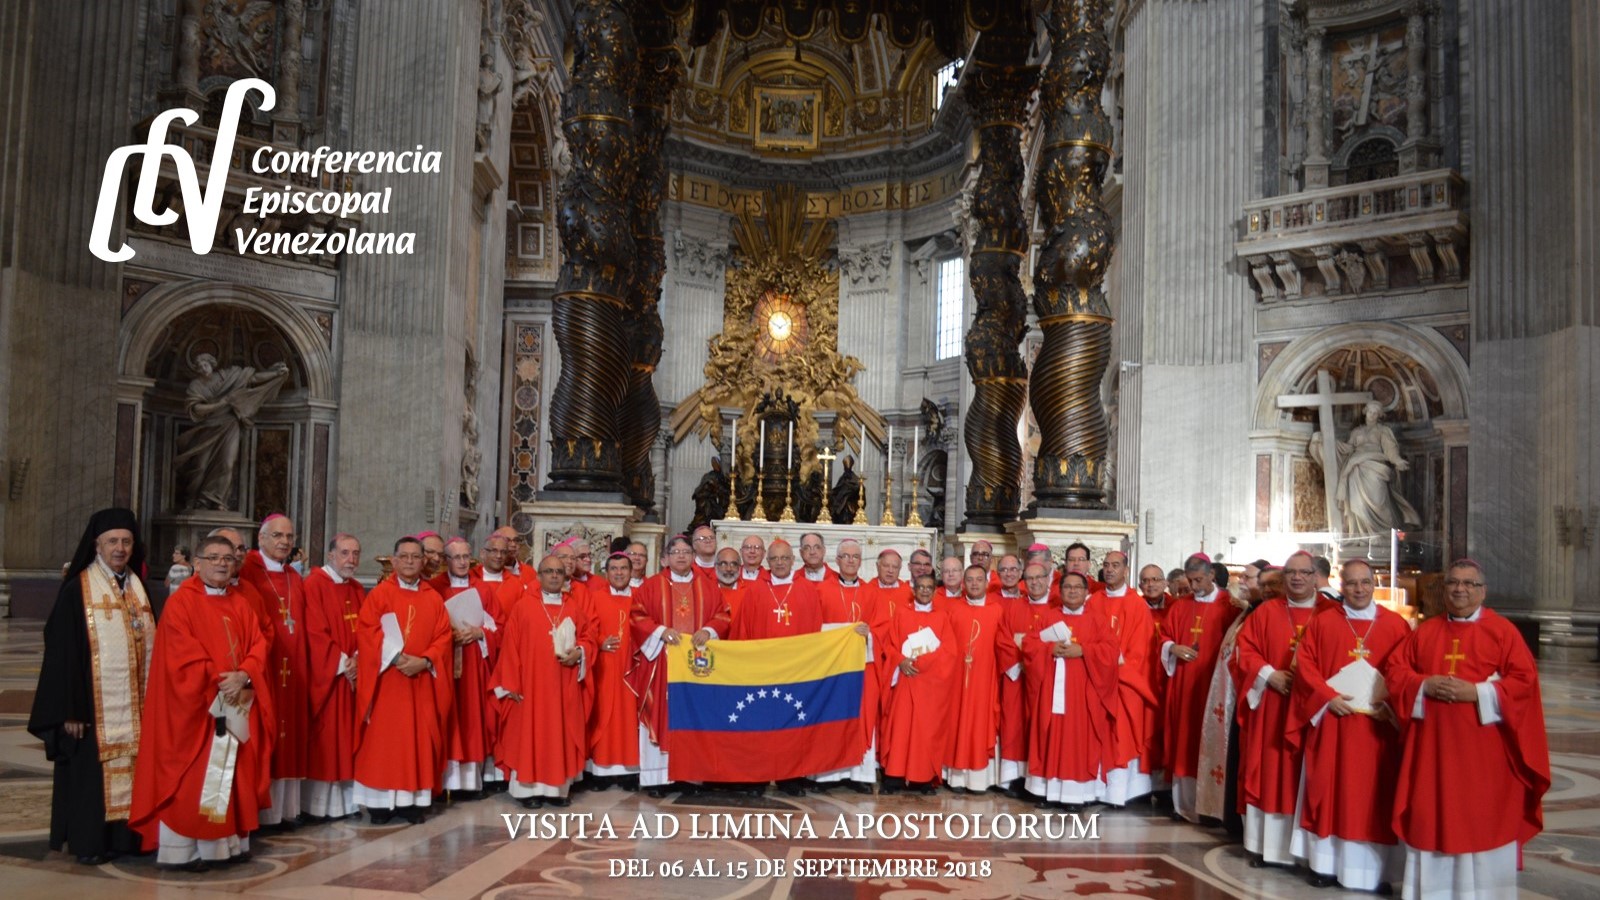 Visita Ad Limina Apostolorum de los Obispos de Venezuela © Conferencia Episcopal Venezolana